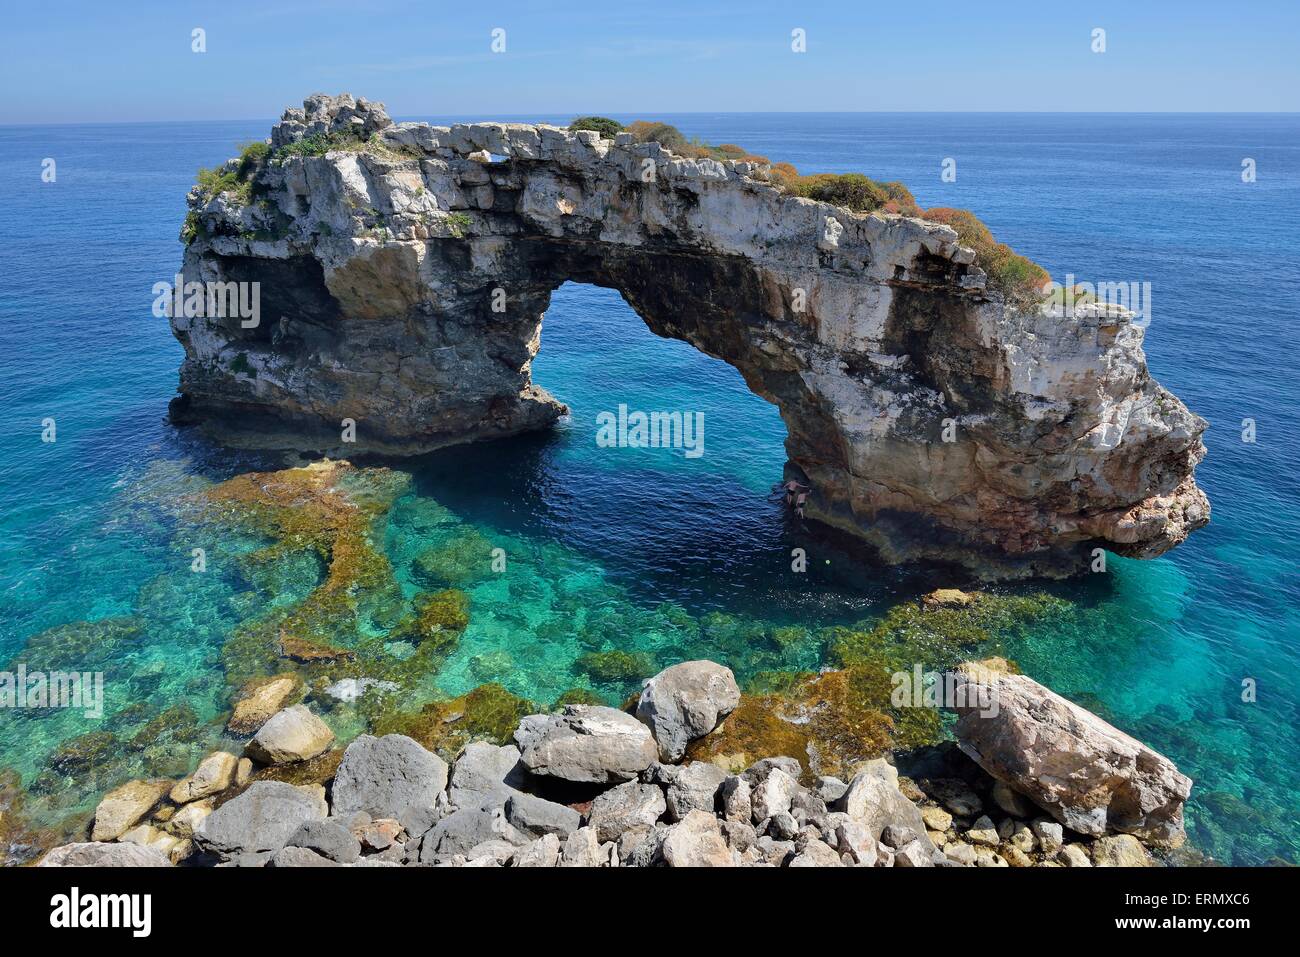 Arche naturelle Es Pontas, près de Cala Llombards, Majorque, Îles Baléares, Espagne Banque D'Images